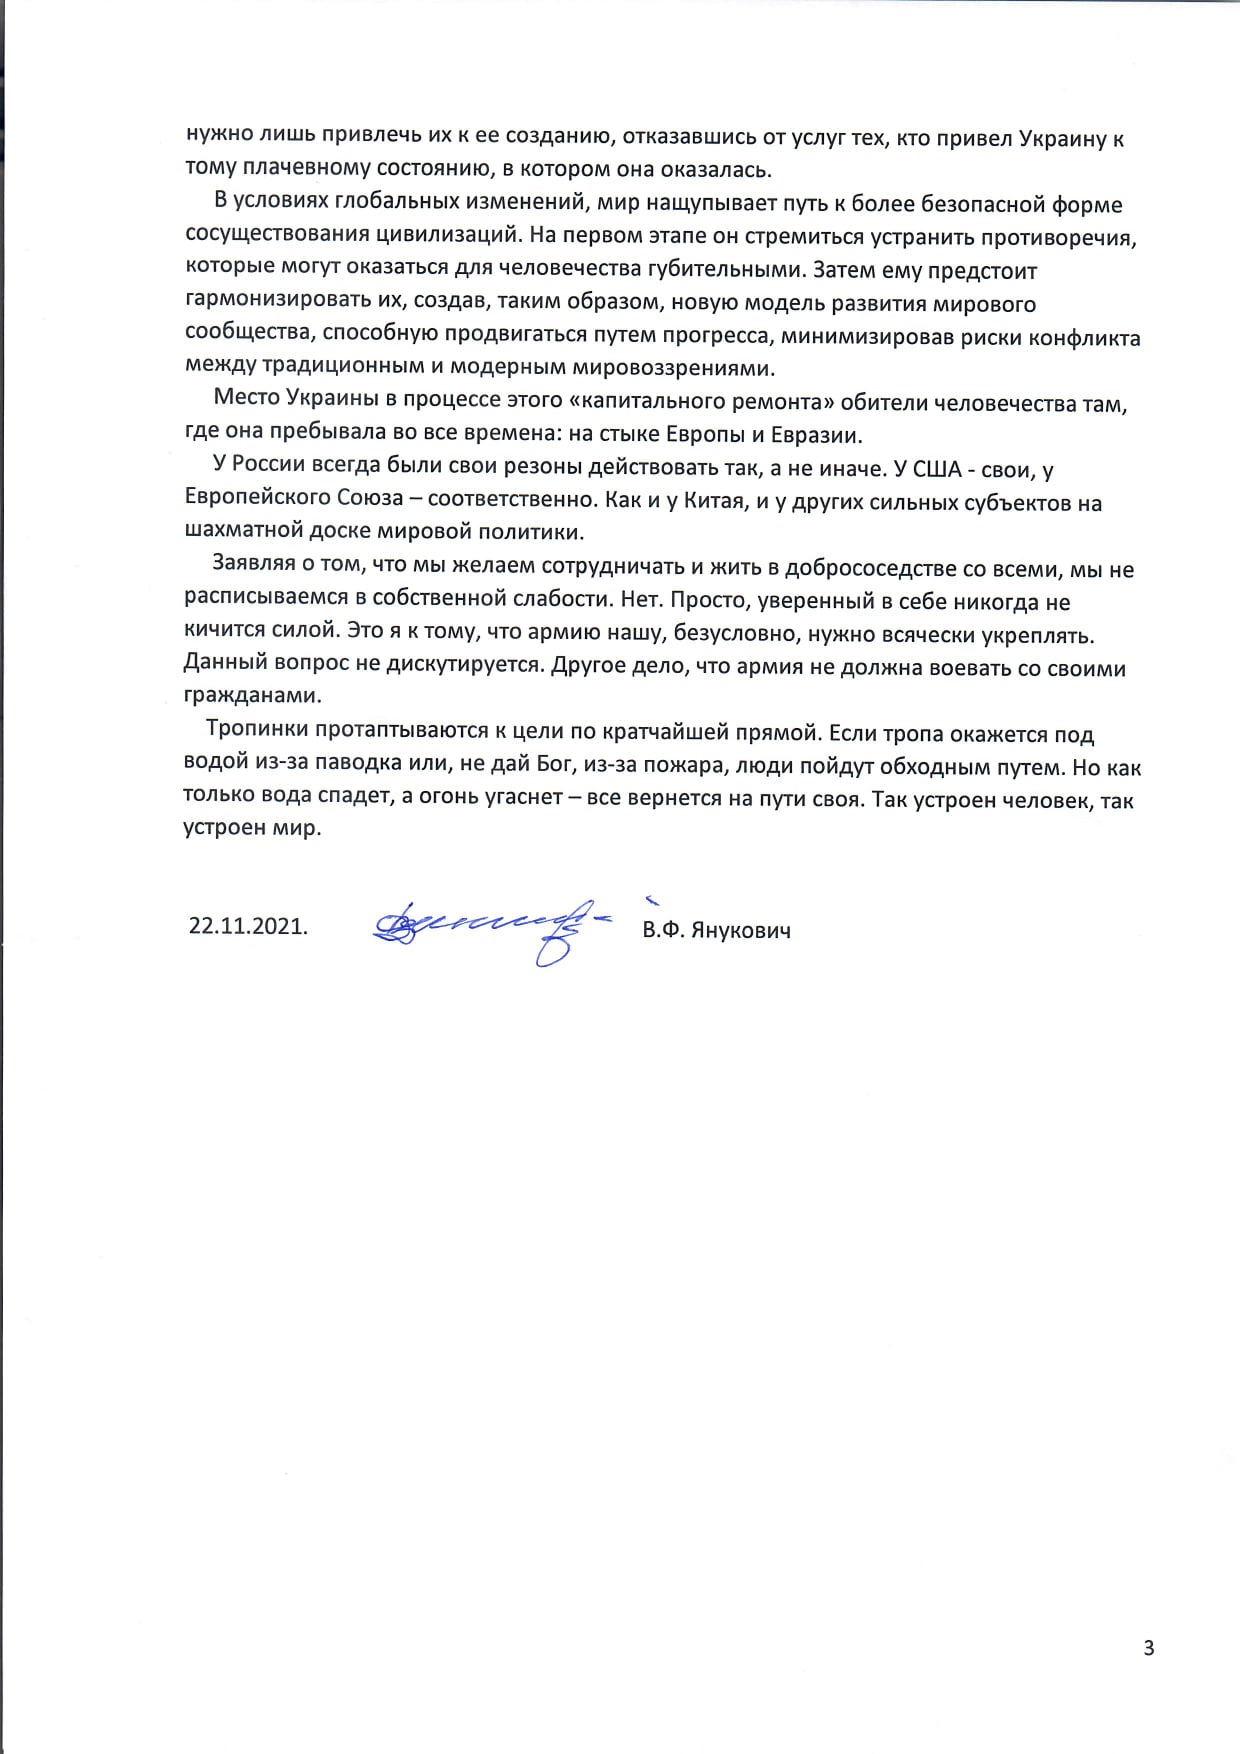 обращение Януковича к украинцам